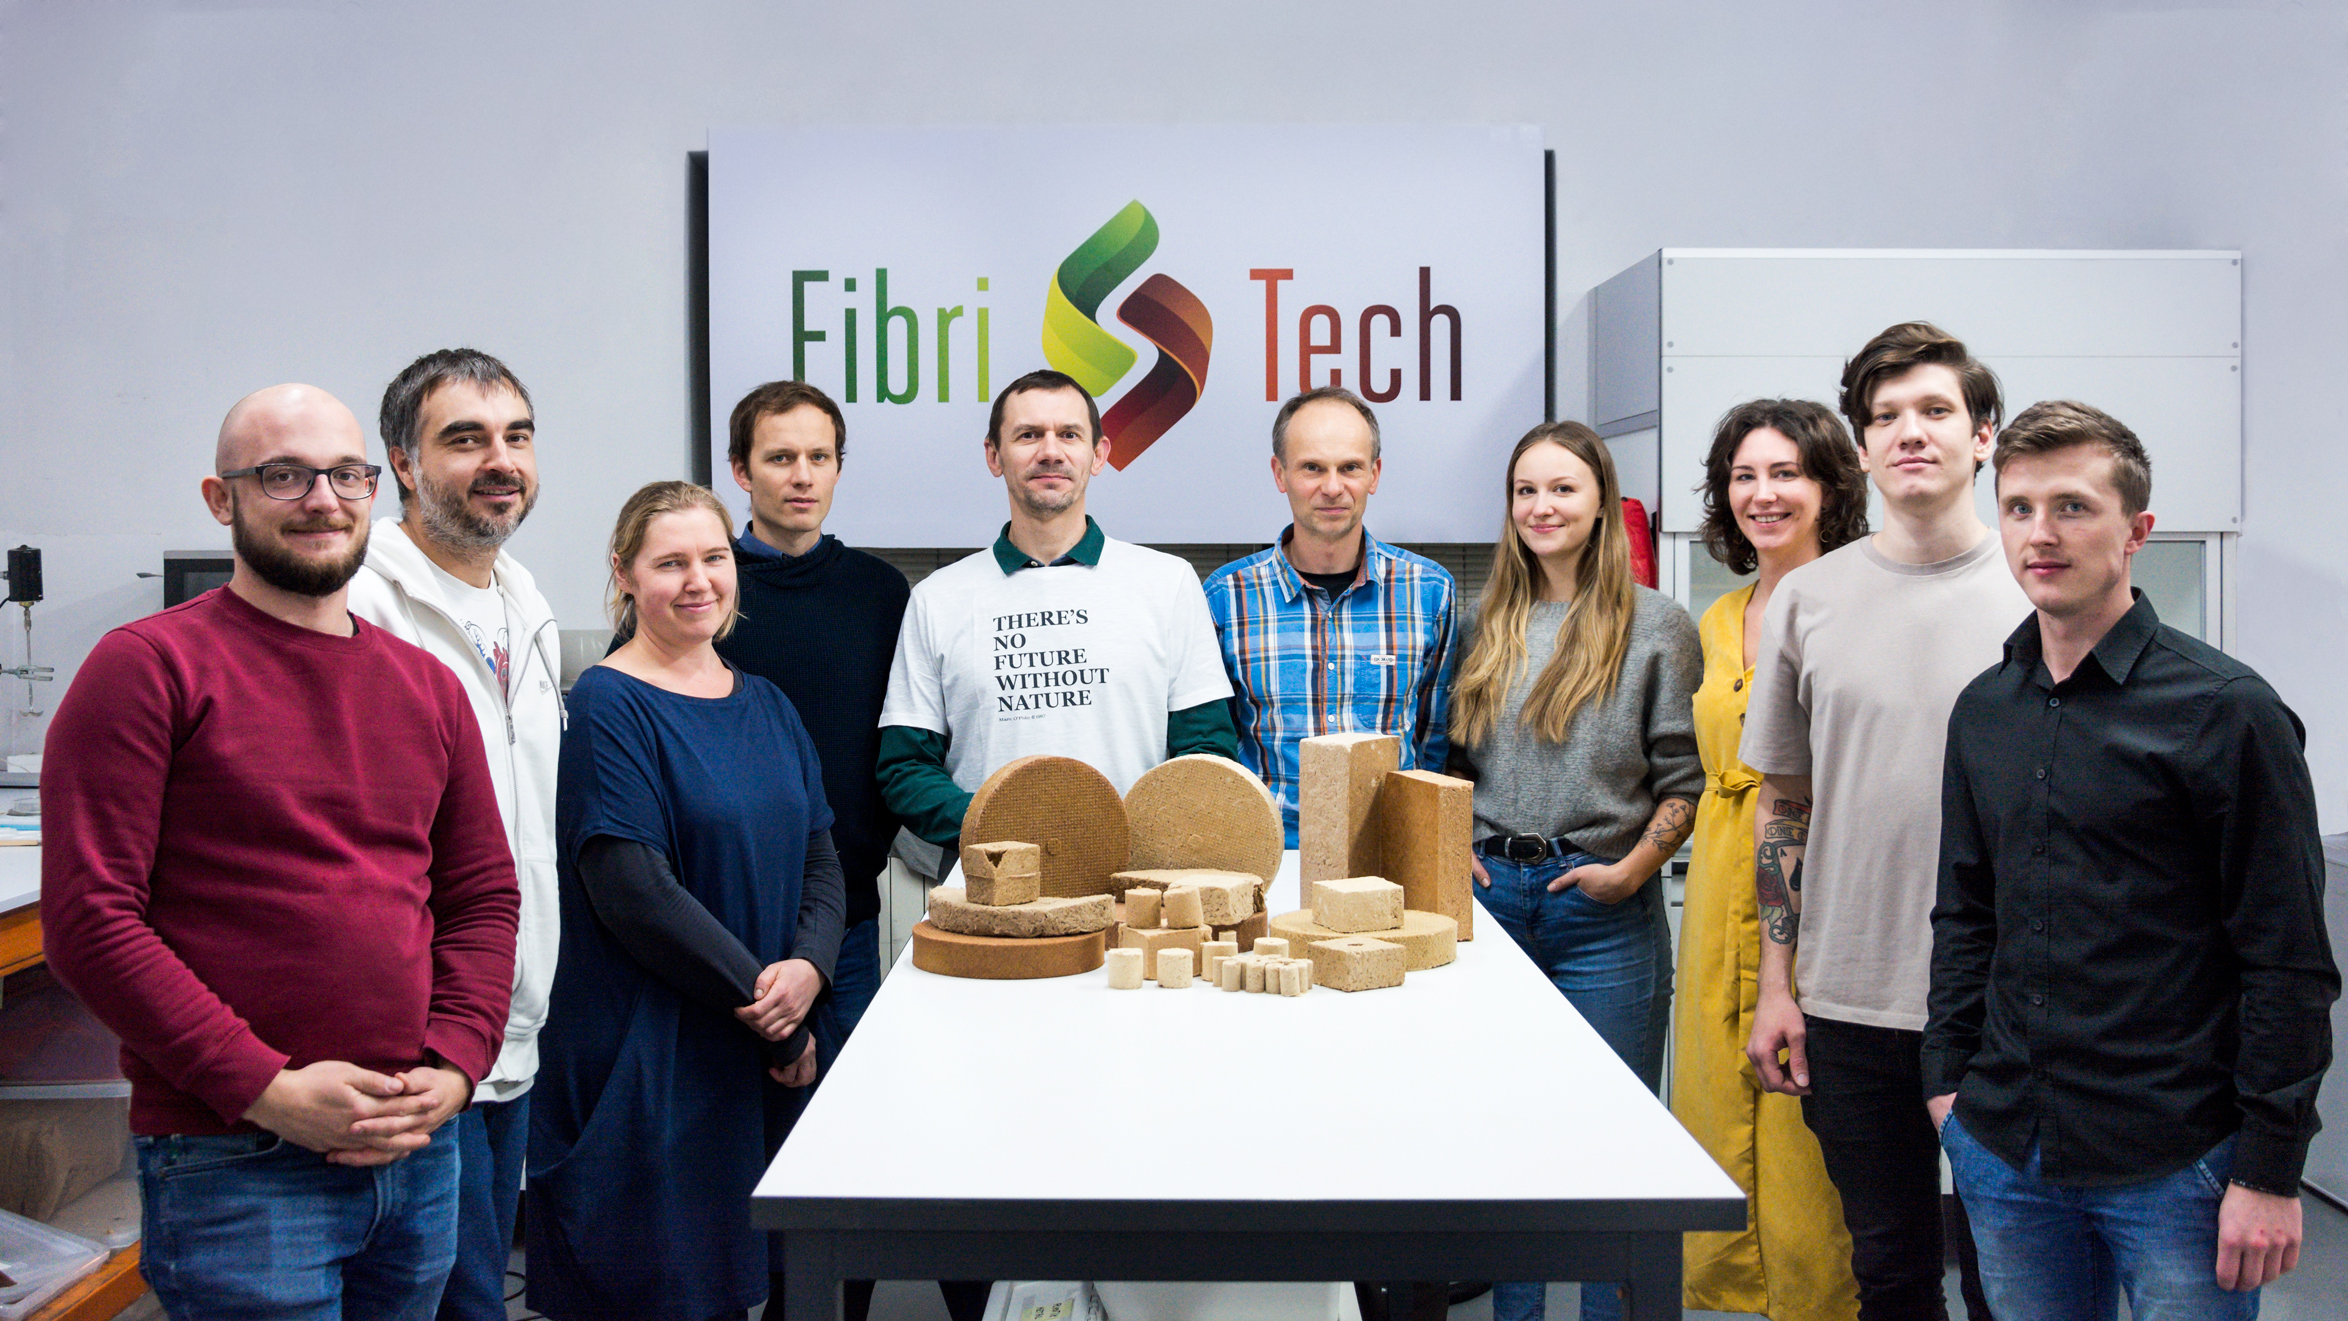 Team FibriTech